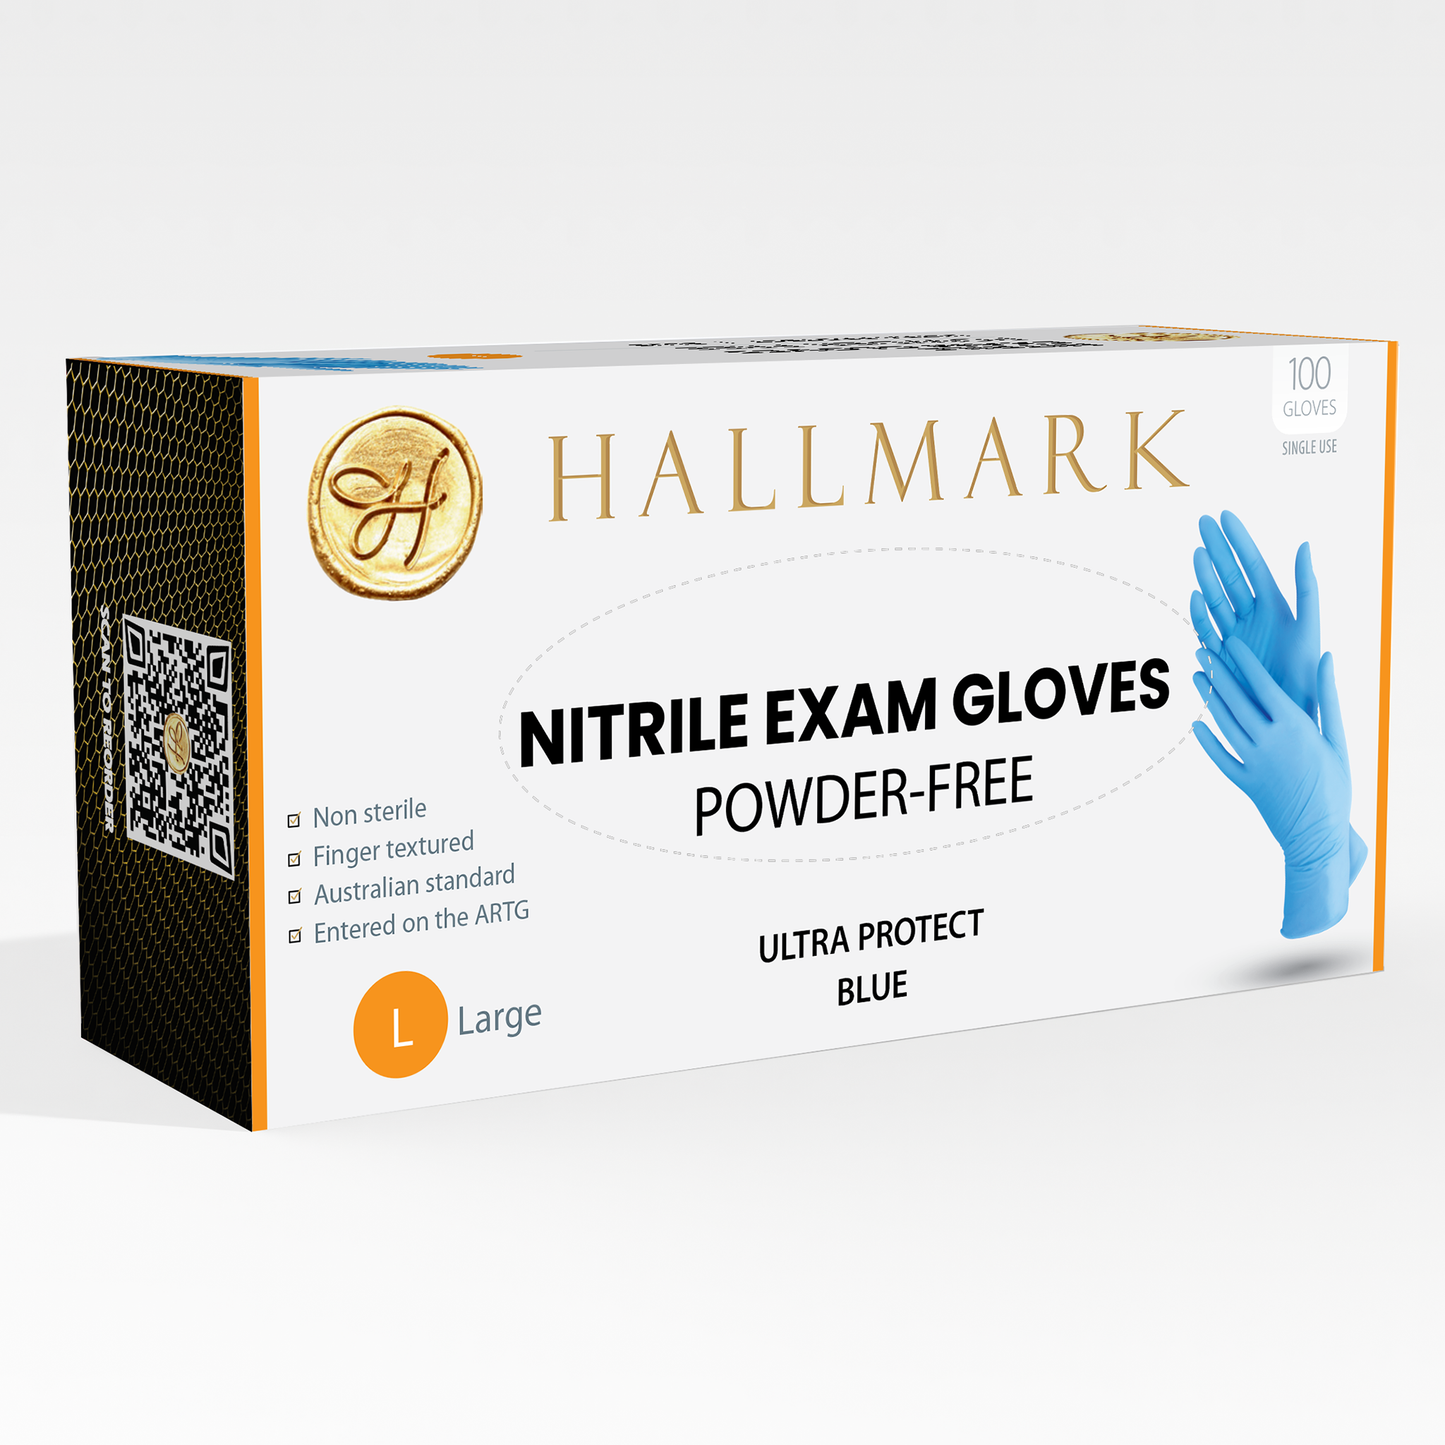 Hallmark Premium Blue Nitrile Gloves, $6.95 per box of 100, 10 boxes per carton